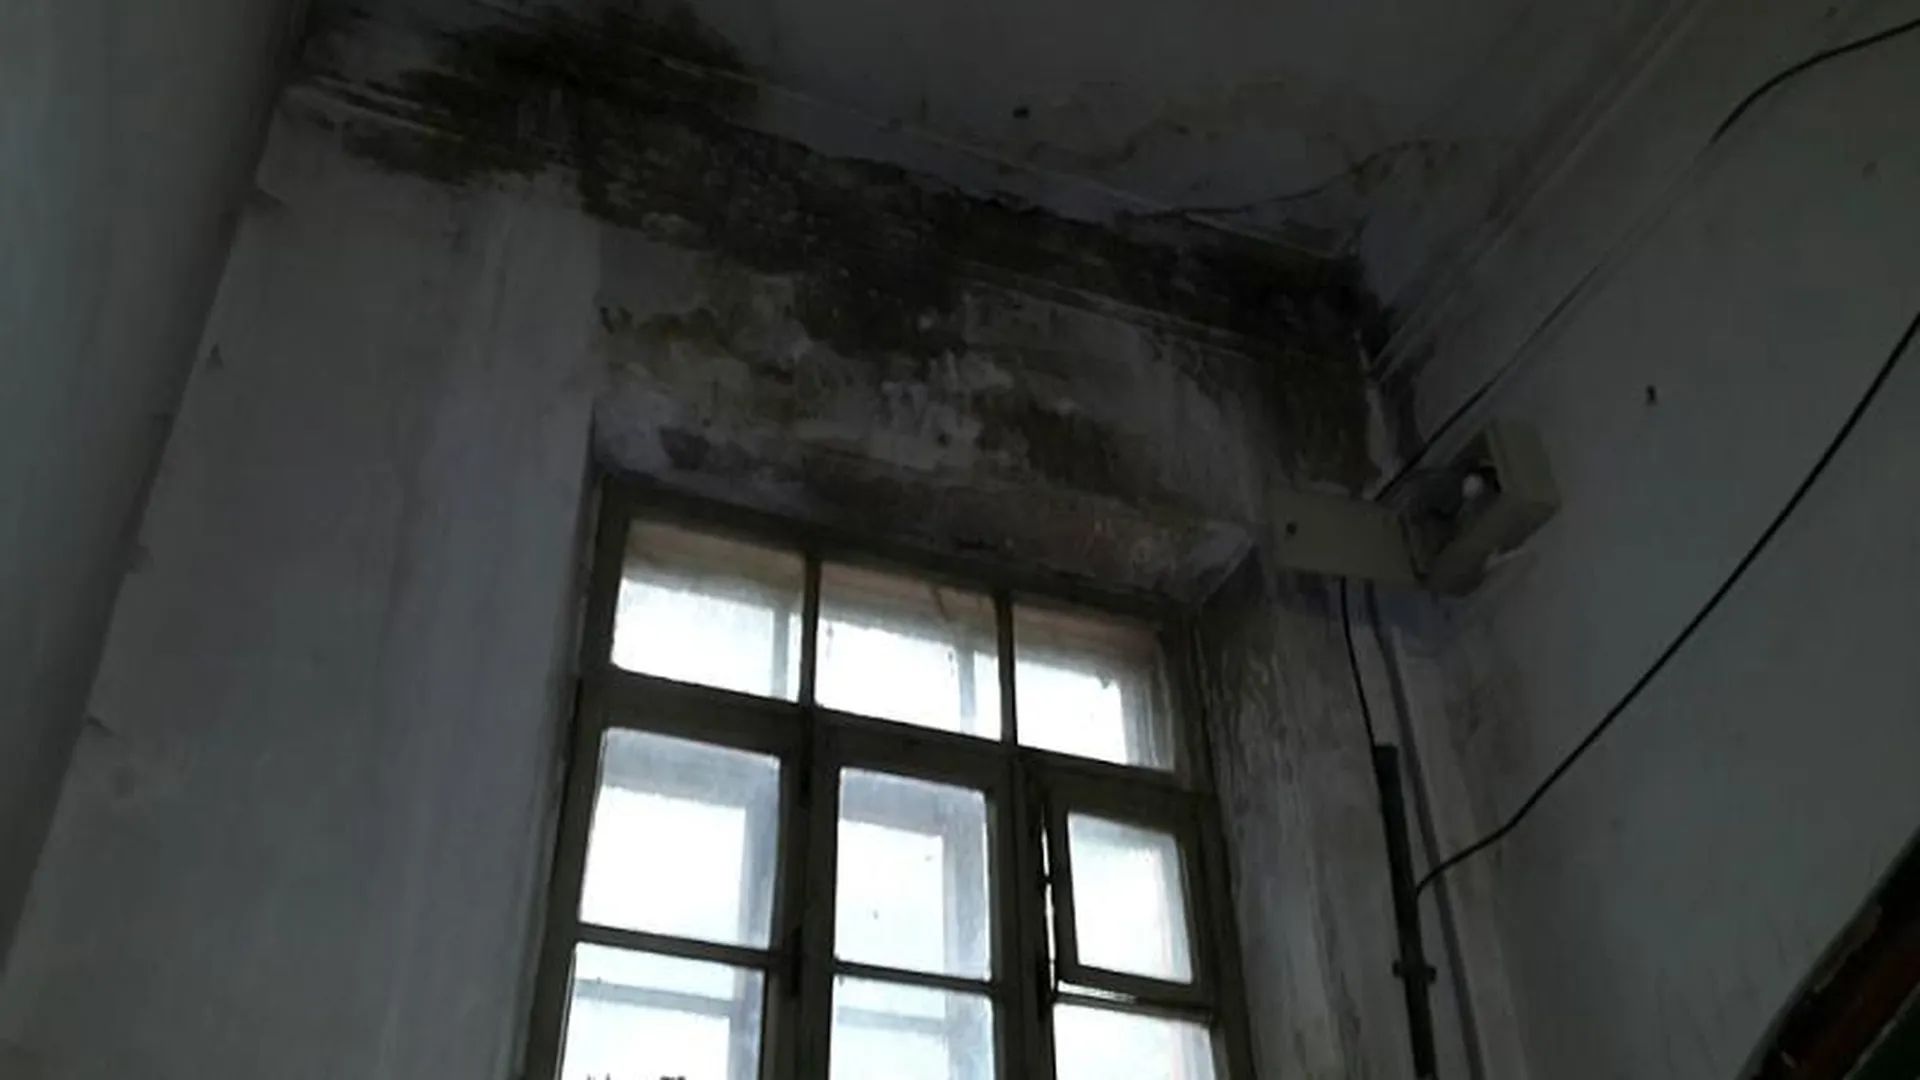 Аварийное общежитие в Орехово-Зуево расселят после вмешательства ГЖИ